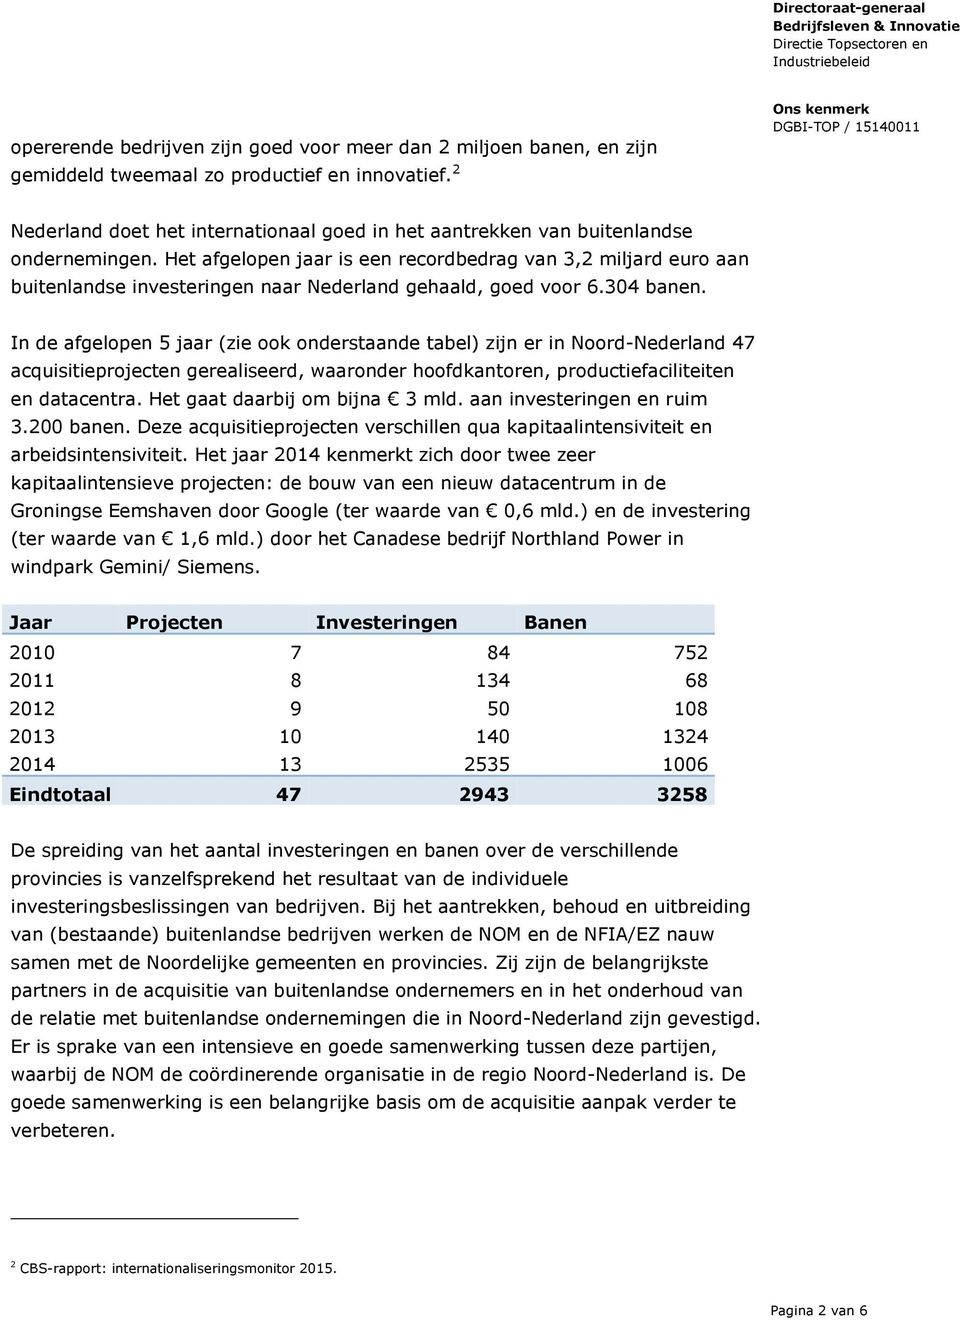 Het afgelopen jaar is een recordbedrag van 3,2 miljard euro aan buitenlandse investeringen naar Nederland gehaald, goed voor 6.304 banen.